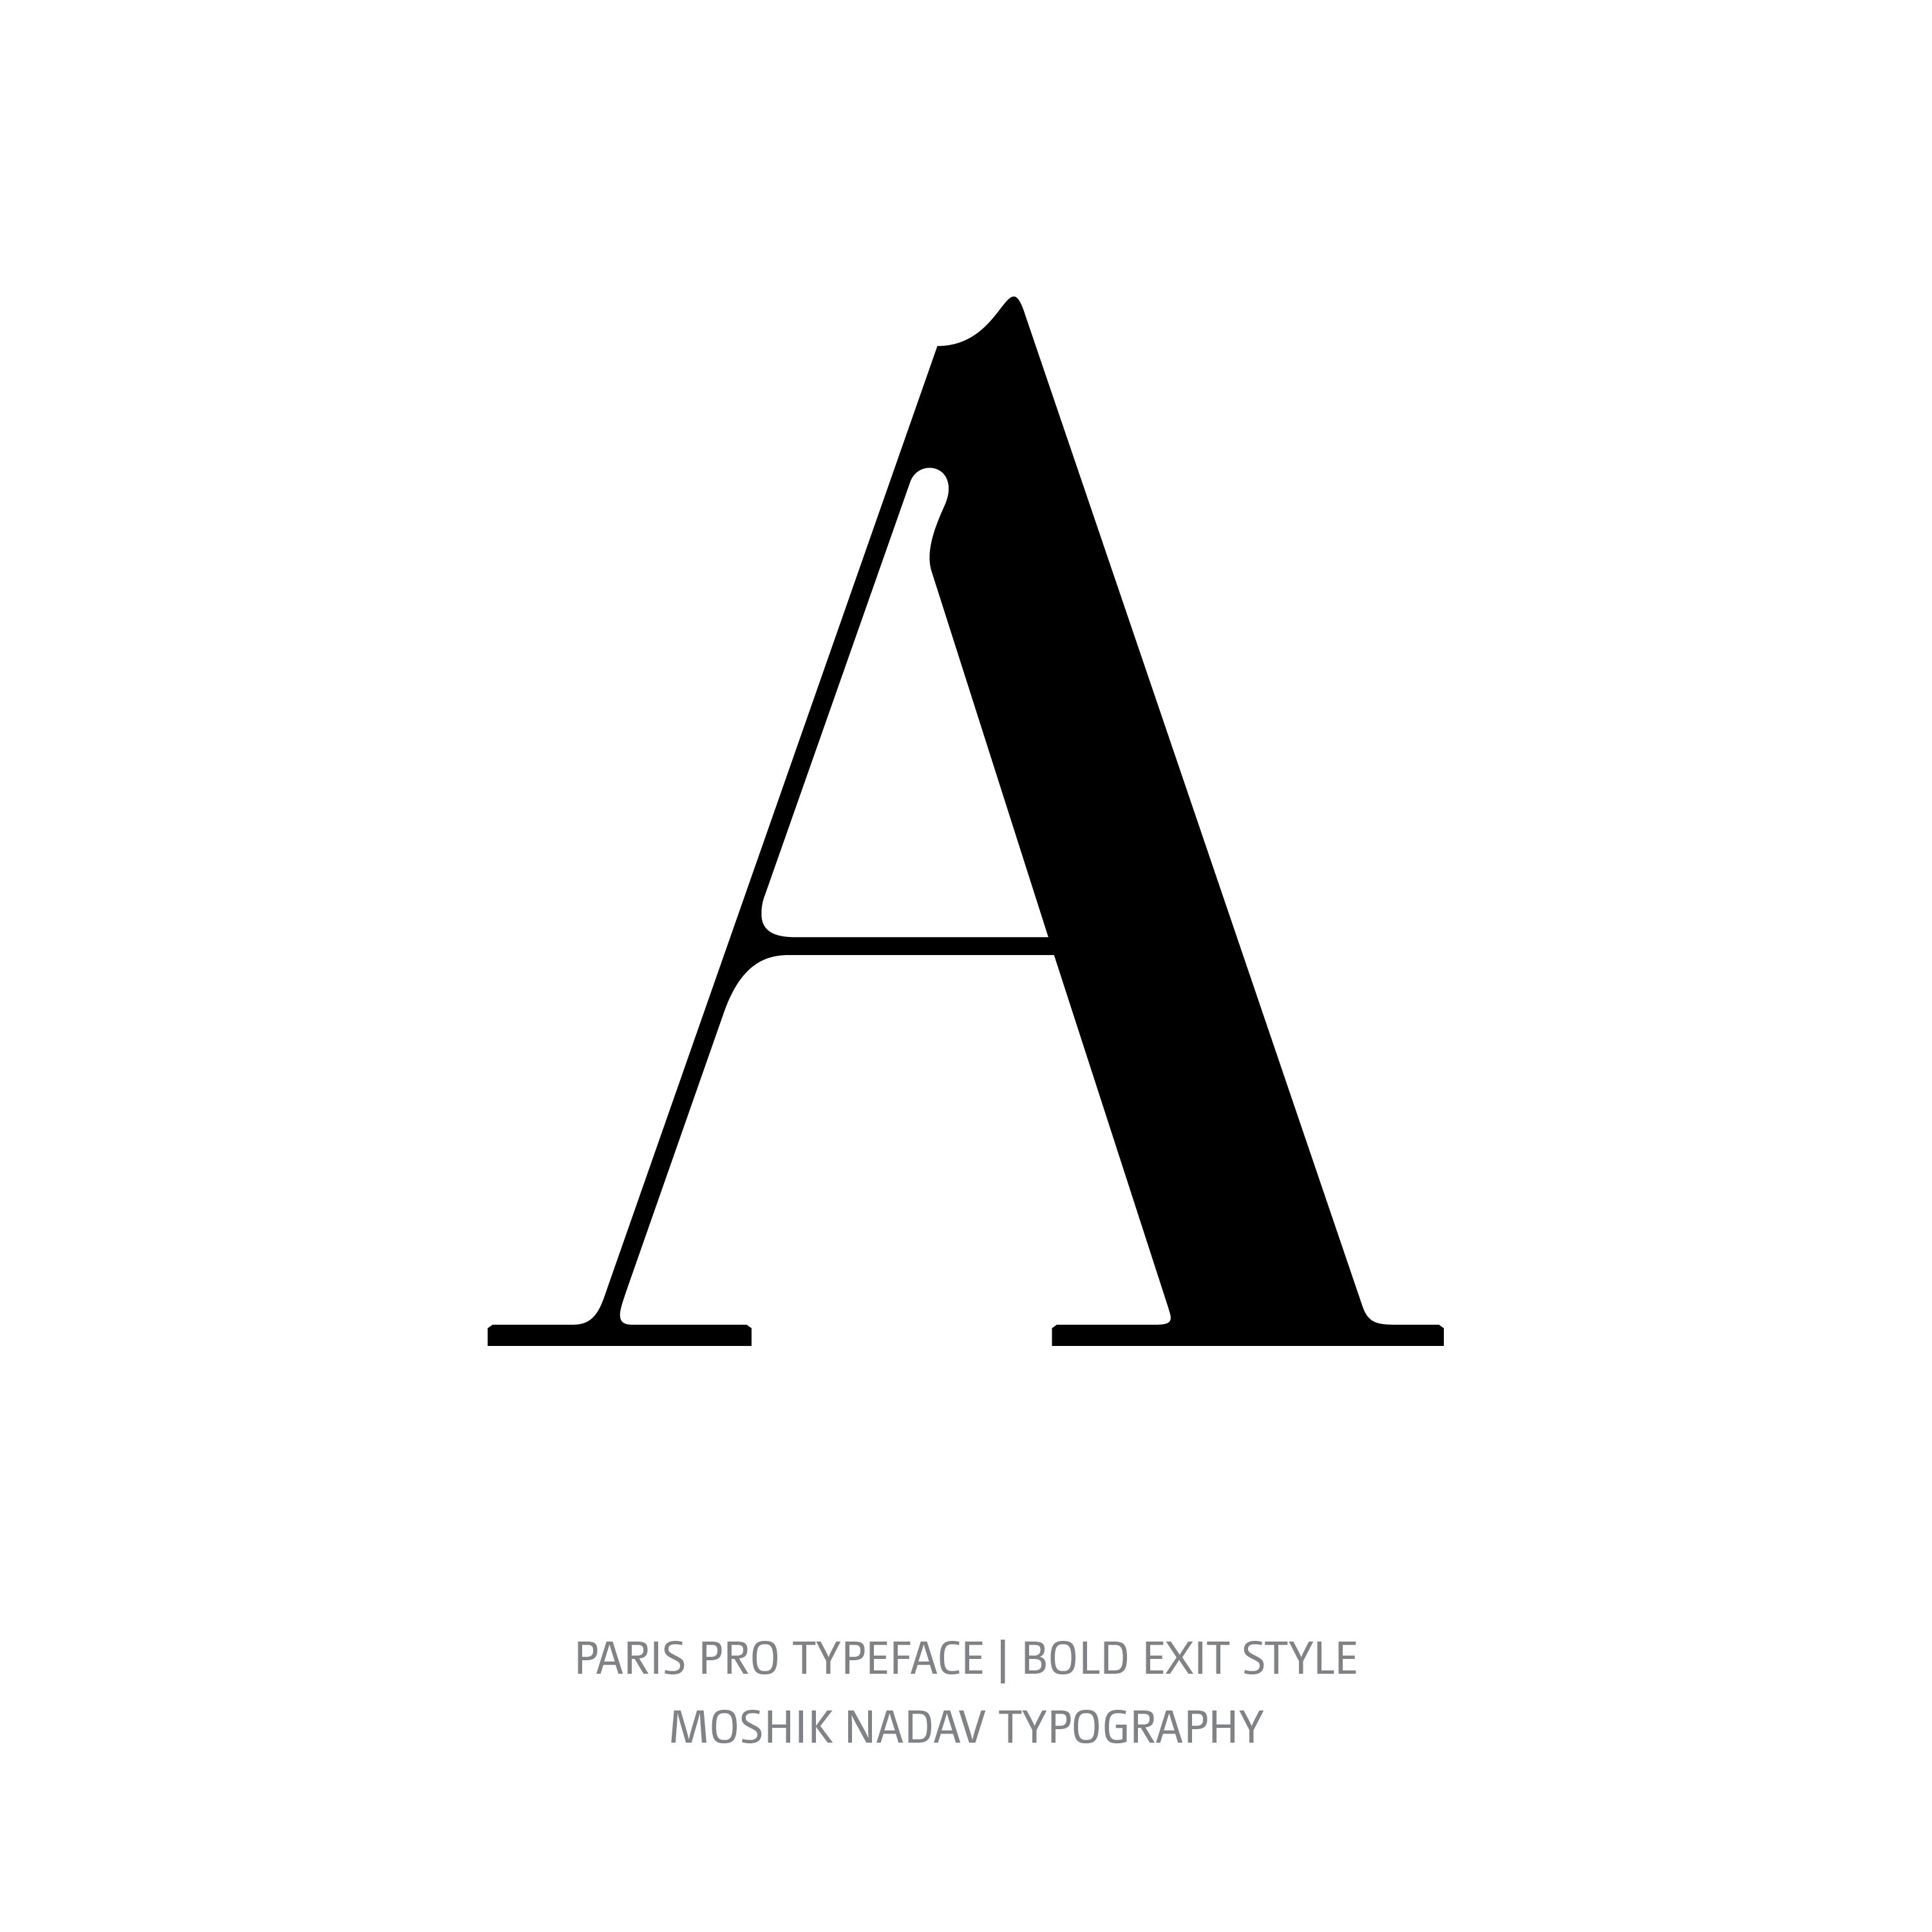 Paris Pro Typeface Bold Exit A